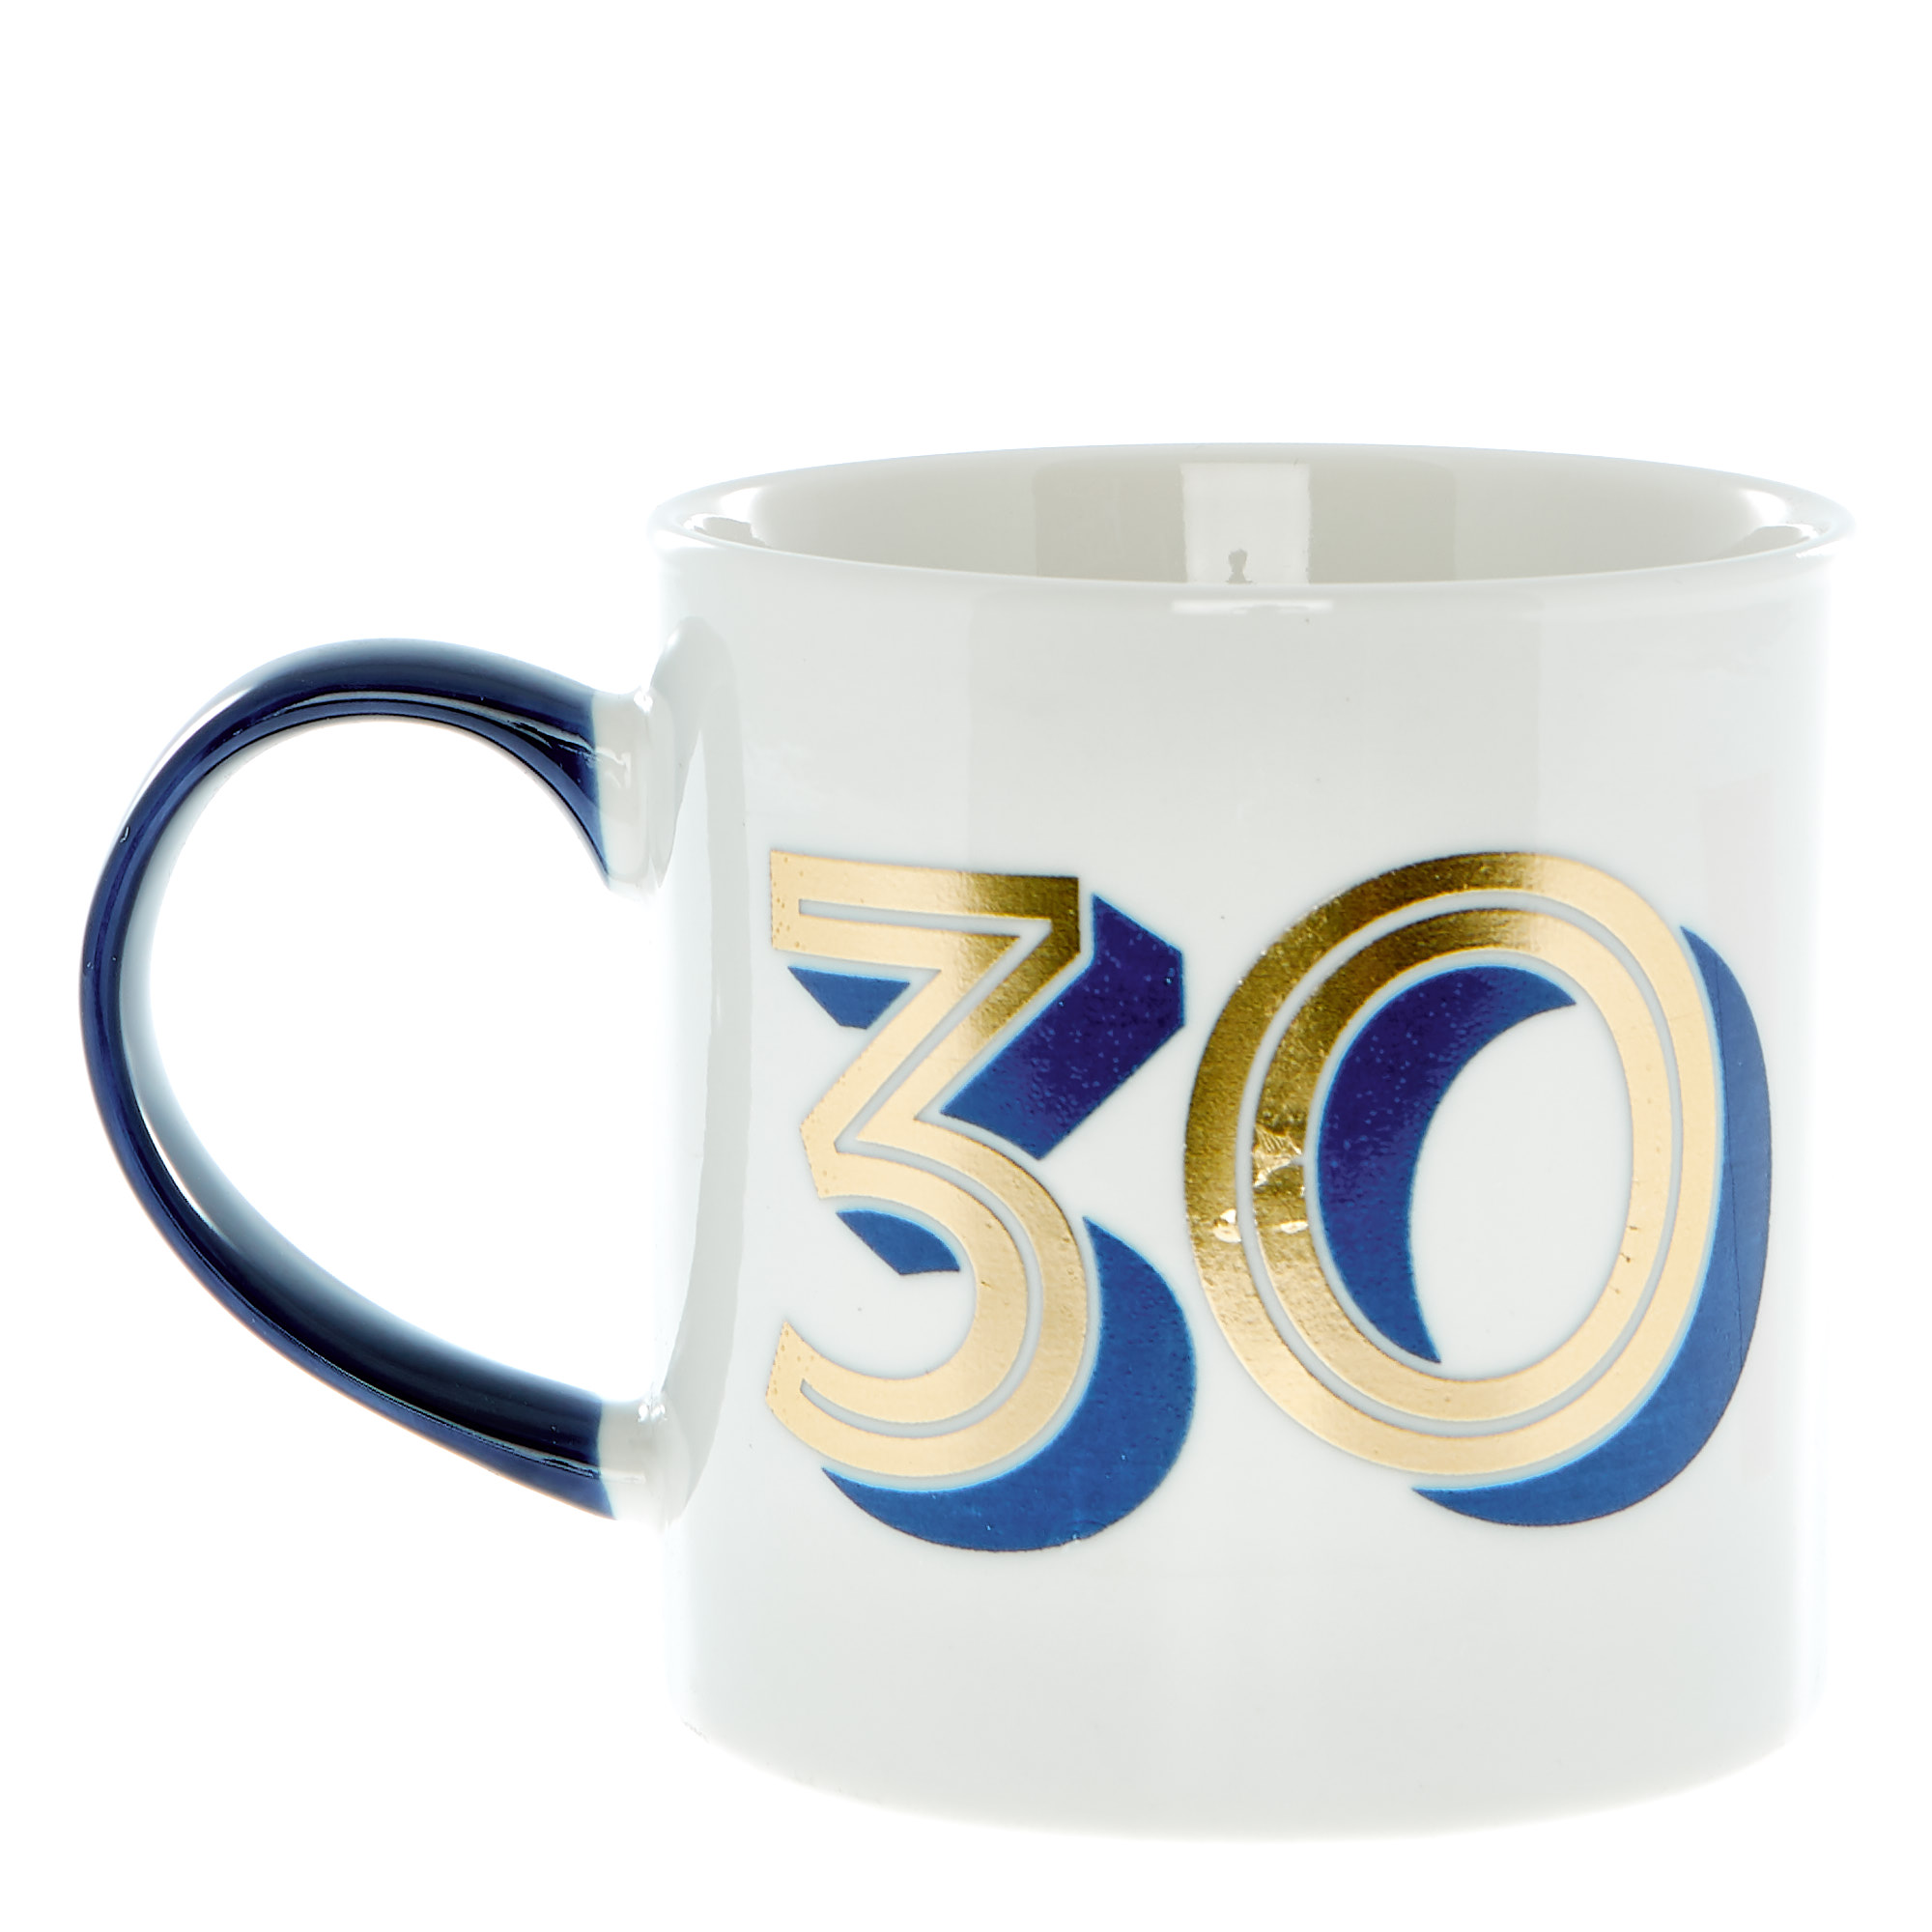 30th Birthday Mug In A Box - Blue & Gold 